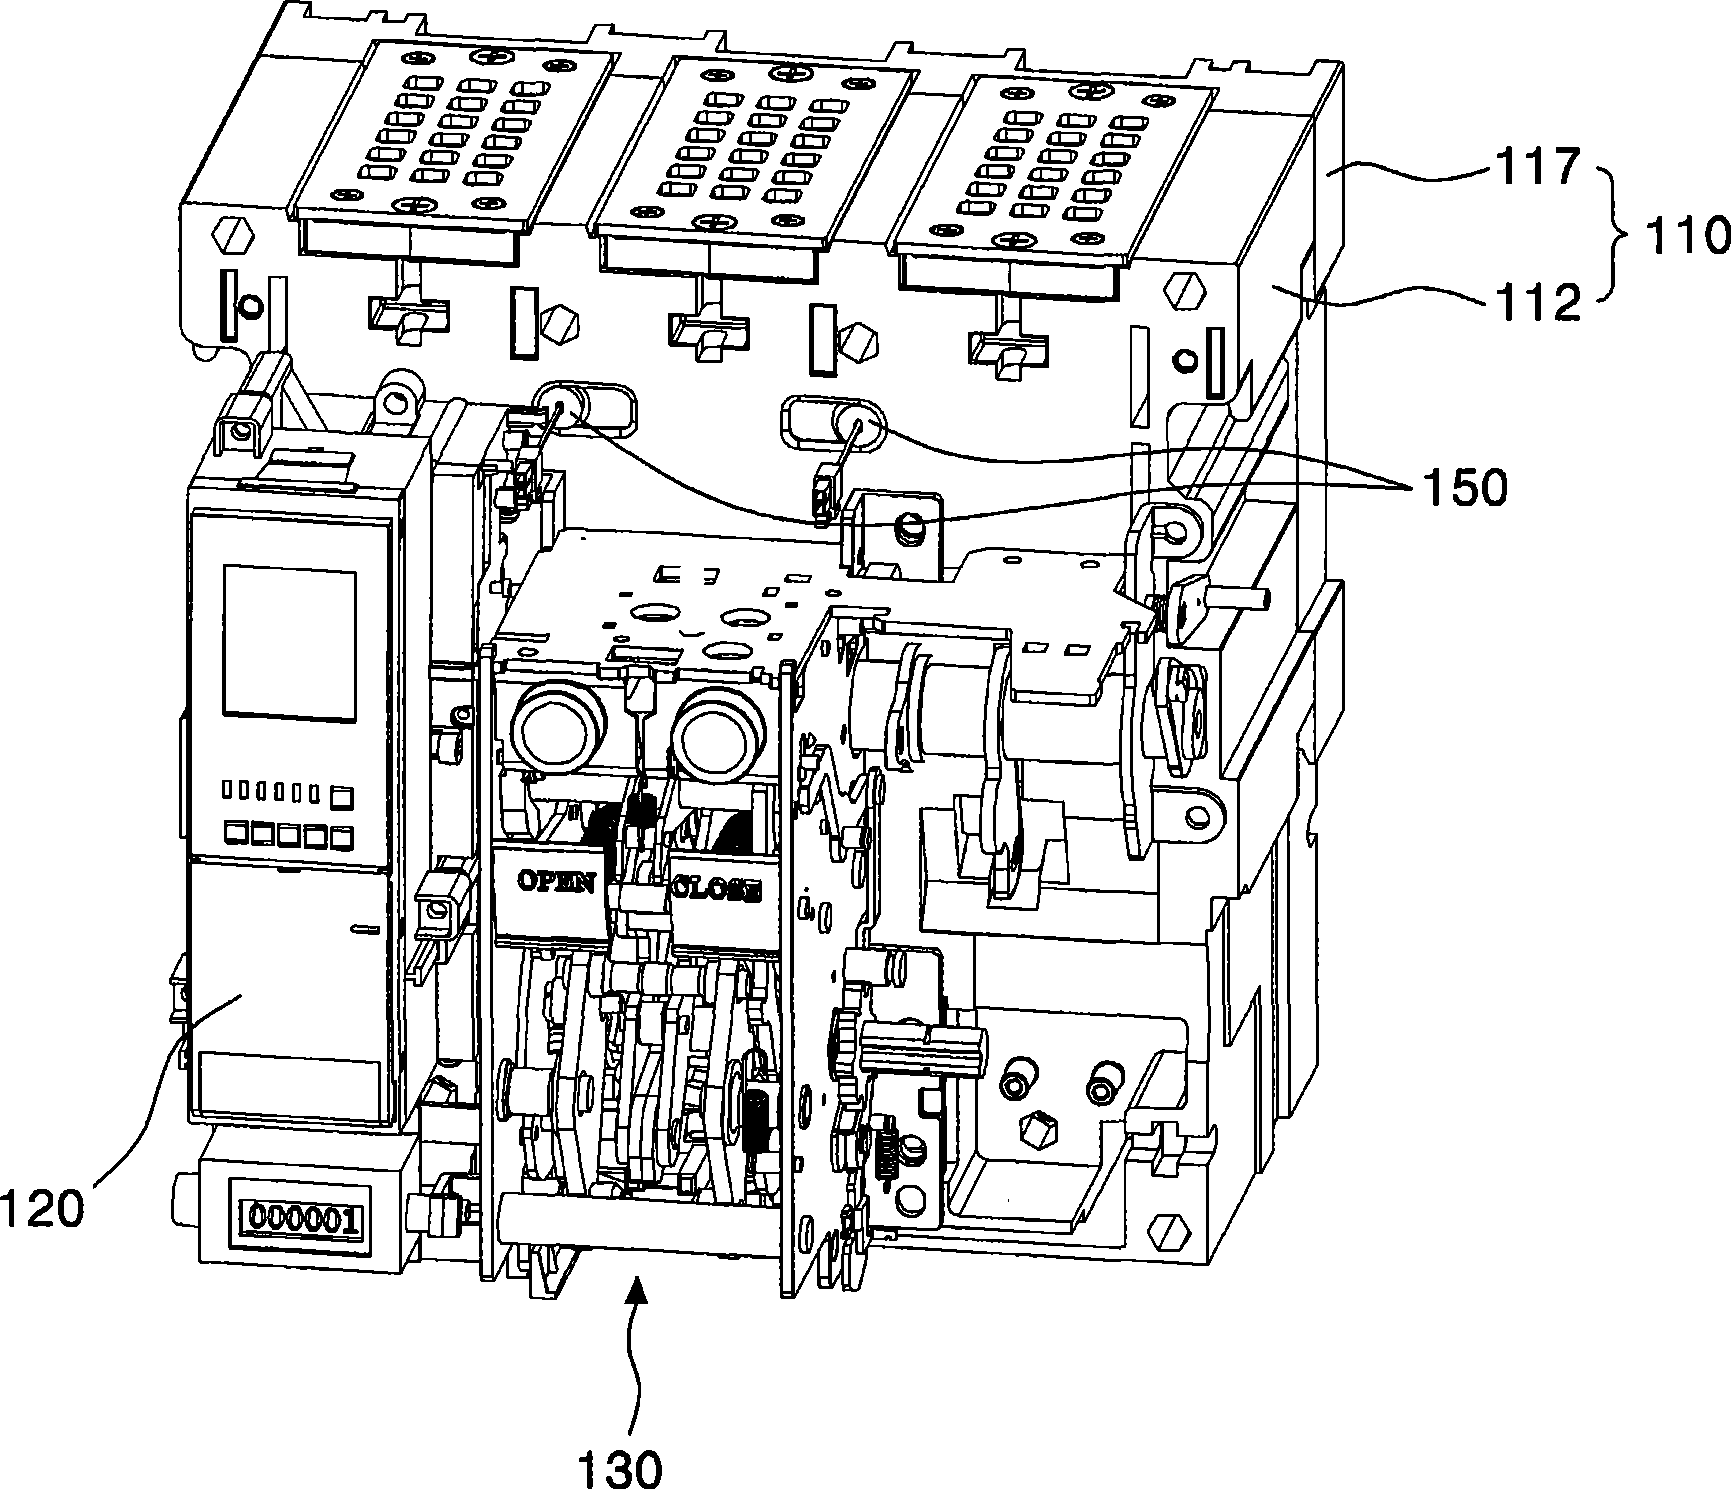 Air circuit breaker with temperature sensor